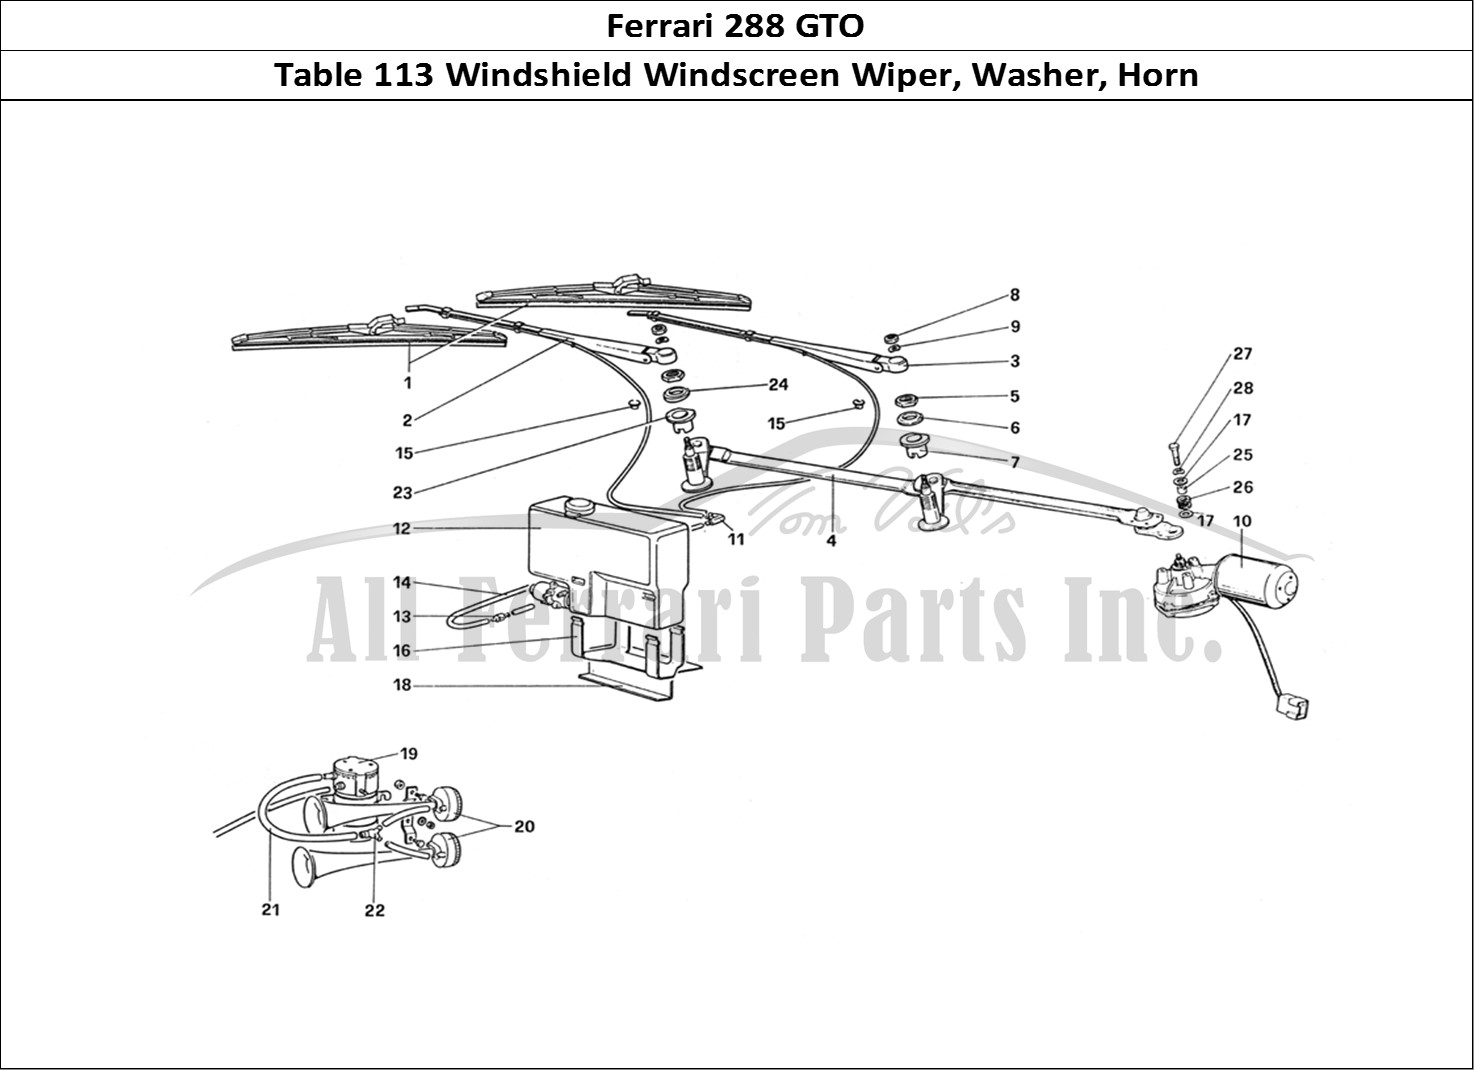 Ferrari Parts Ferrari 288 GTO Page 113 Windshield Wiper - Washer